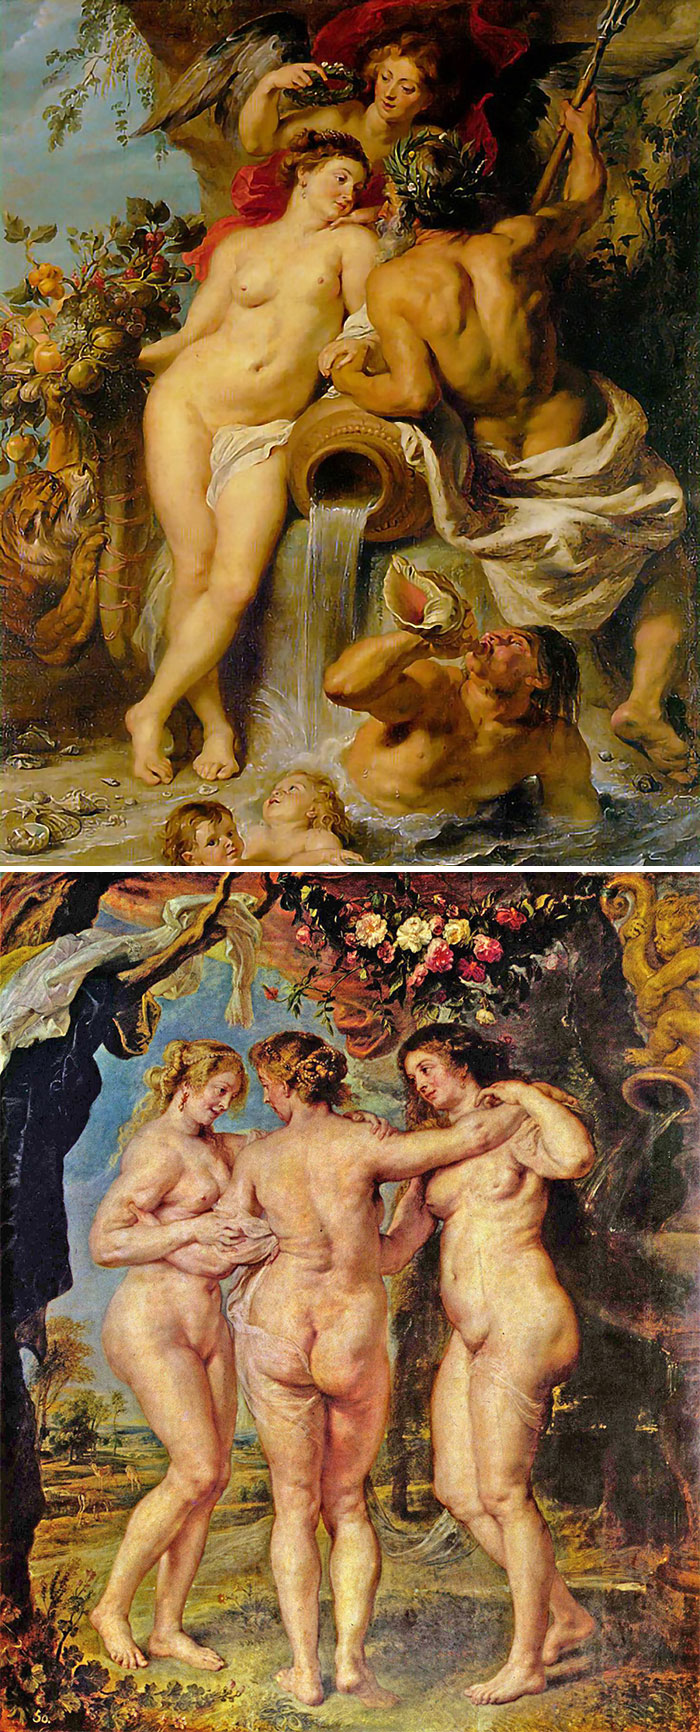 Rubens Jak rozpoznać słynnych malarzy? Skuteczny przewodnik po sztuce z lekkim przymrużeniem oka